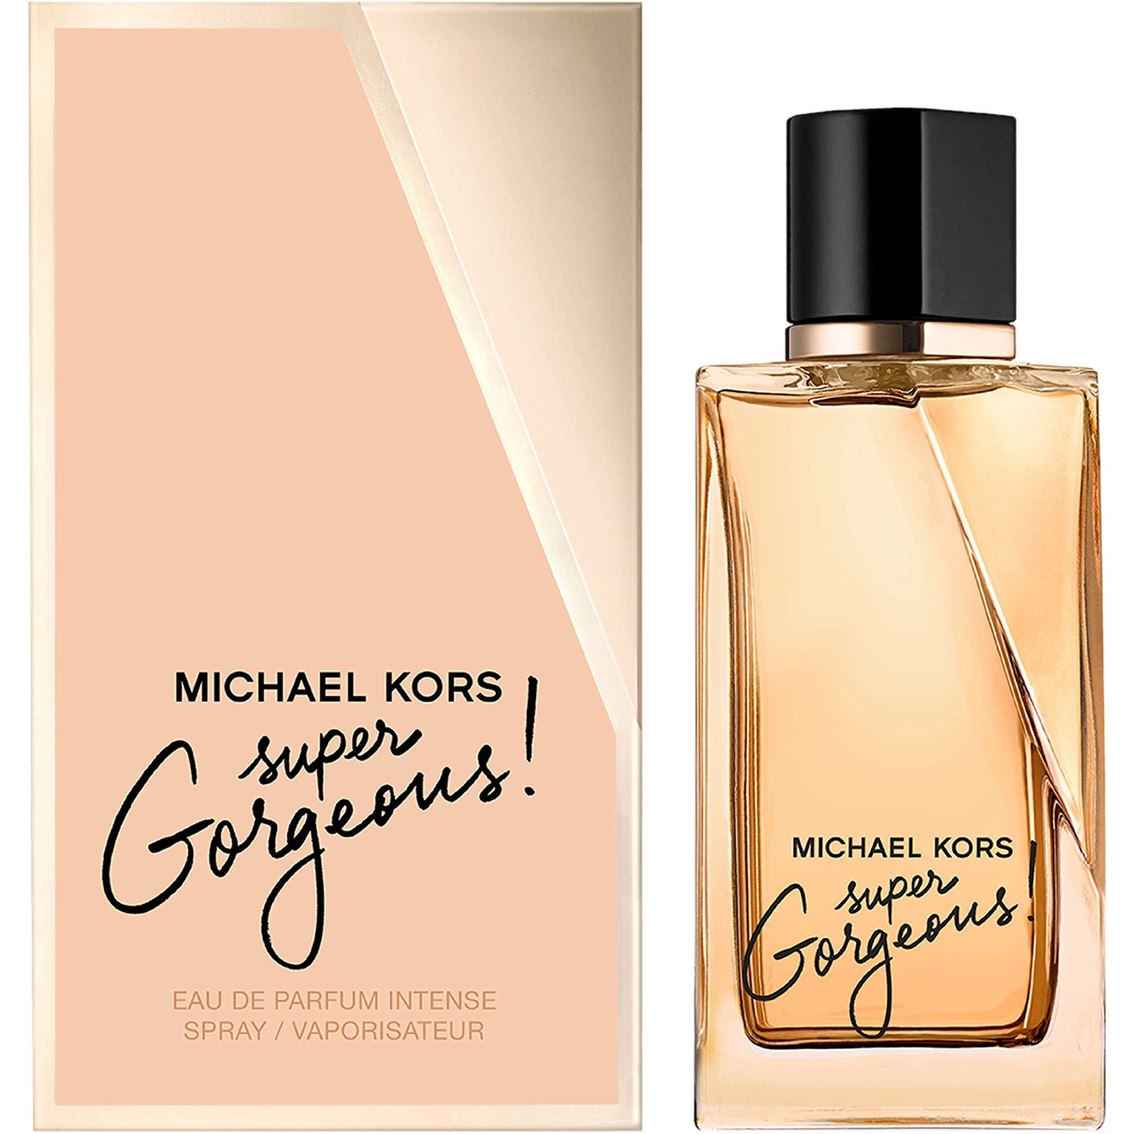 Micheal Kors Super Gorgeous! Eau de Parfum - Image 2 of 2